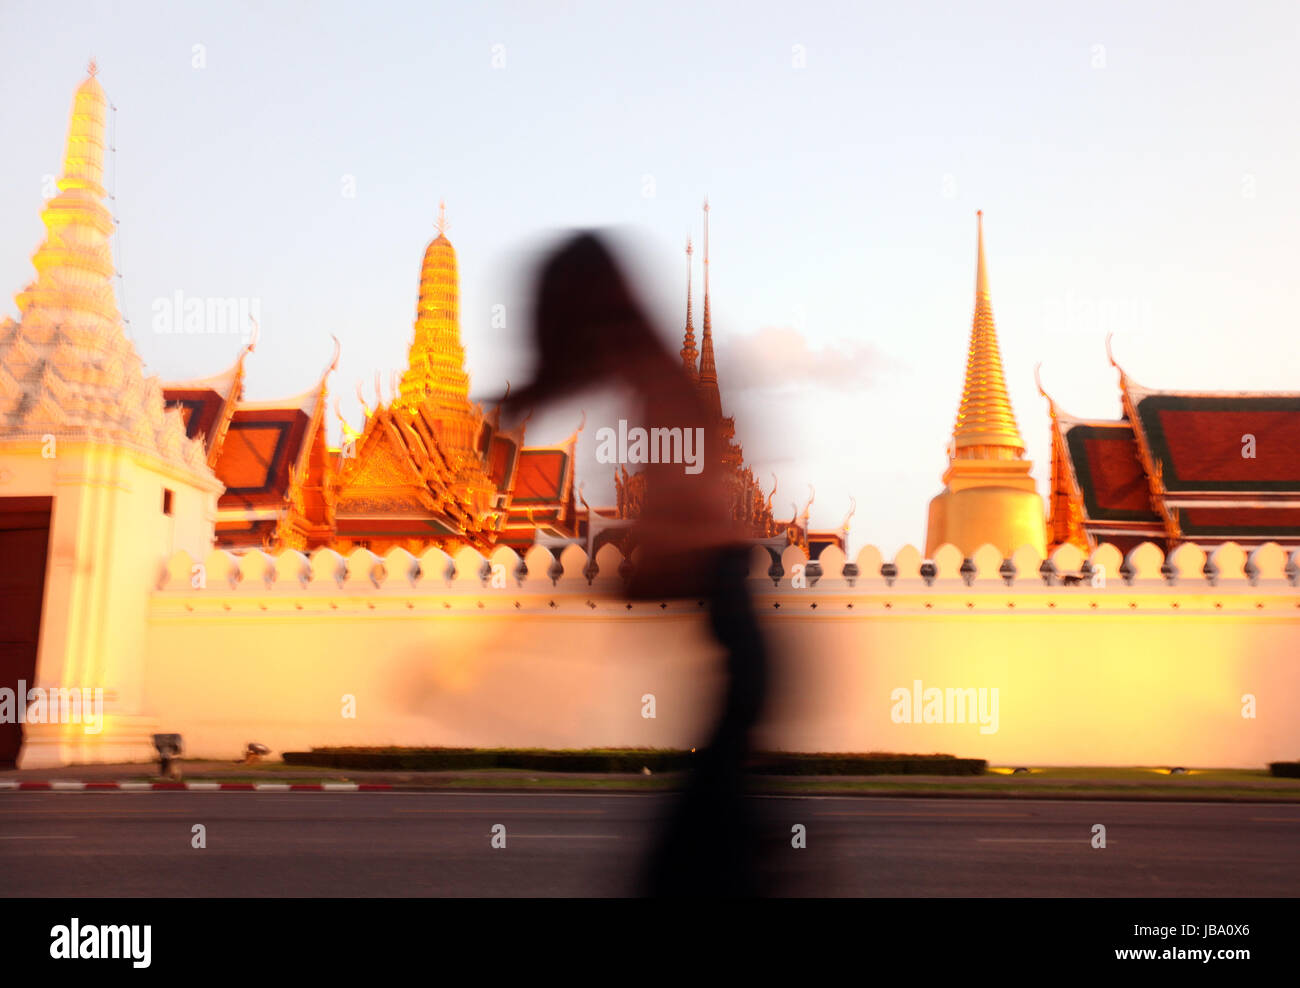 Dans Tempelgelaende das der Abendstimmung mit dem Wat Phra Keo beim Koenigspalast im Historischen Zentrum der Hauptstadt Bangkok en Thaïlande. Banque D'Images